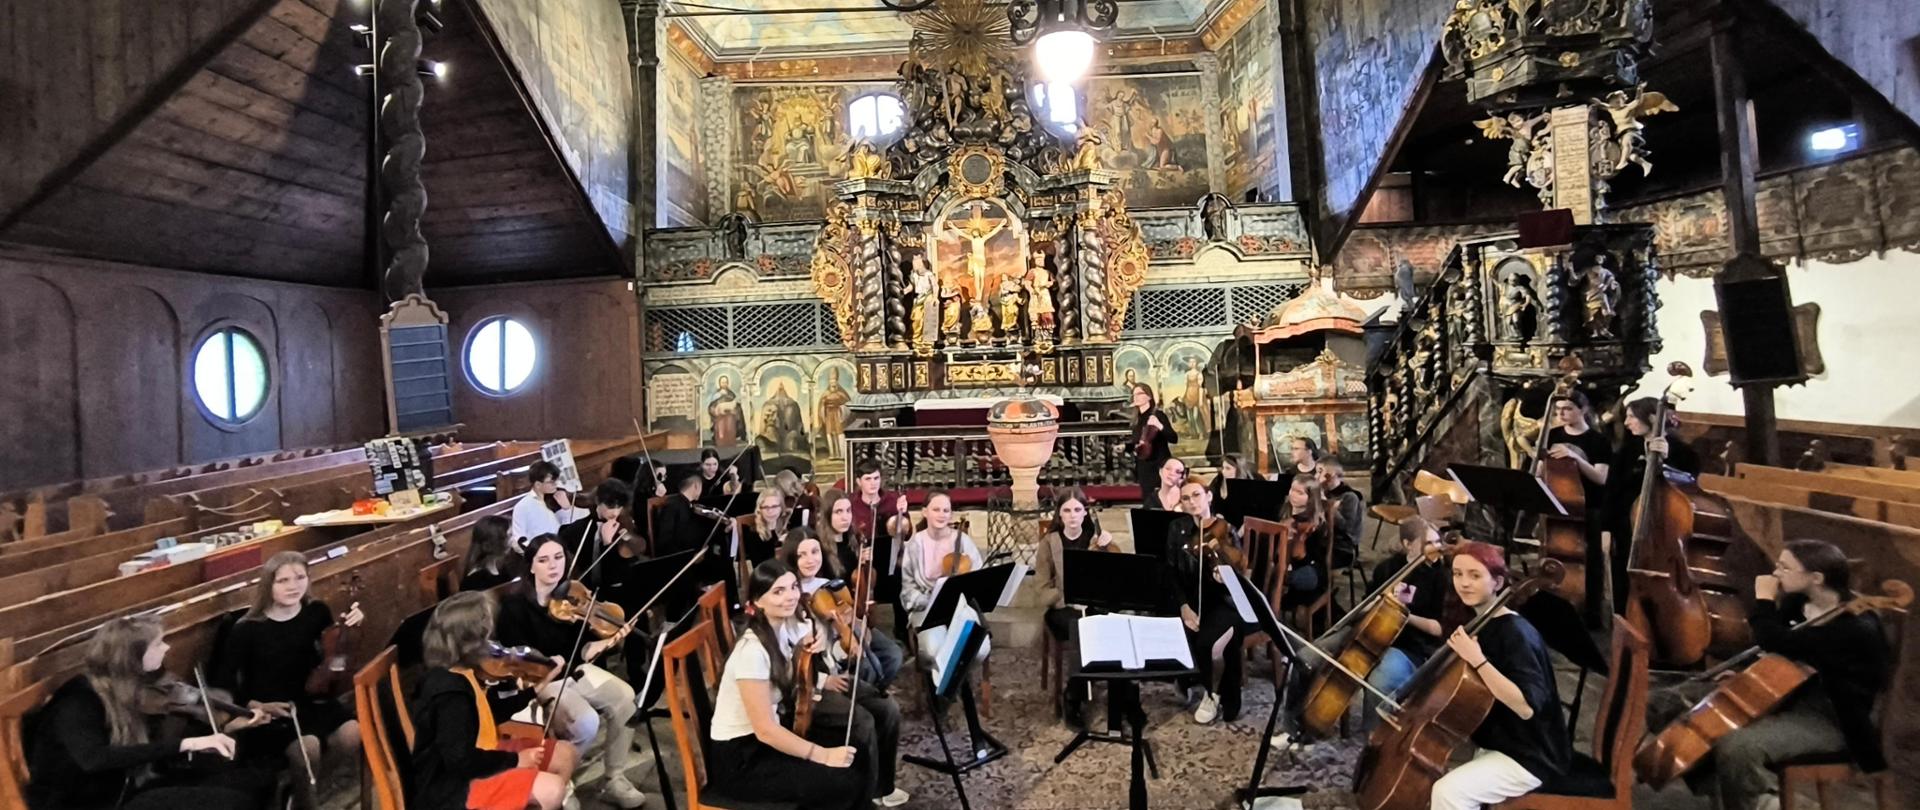 Połączone orkiestry Základnej umeleckiej školy Antona Cígera v Kežmarku i Zespołu Państwowych Szkół Muzycznych w Bochni w kościele artykularnym w Kieżmarku.